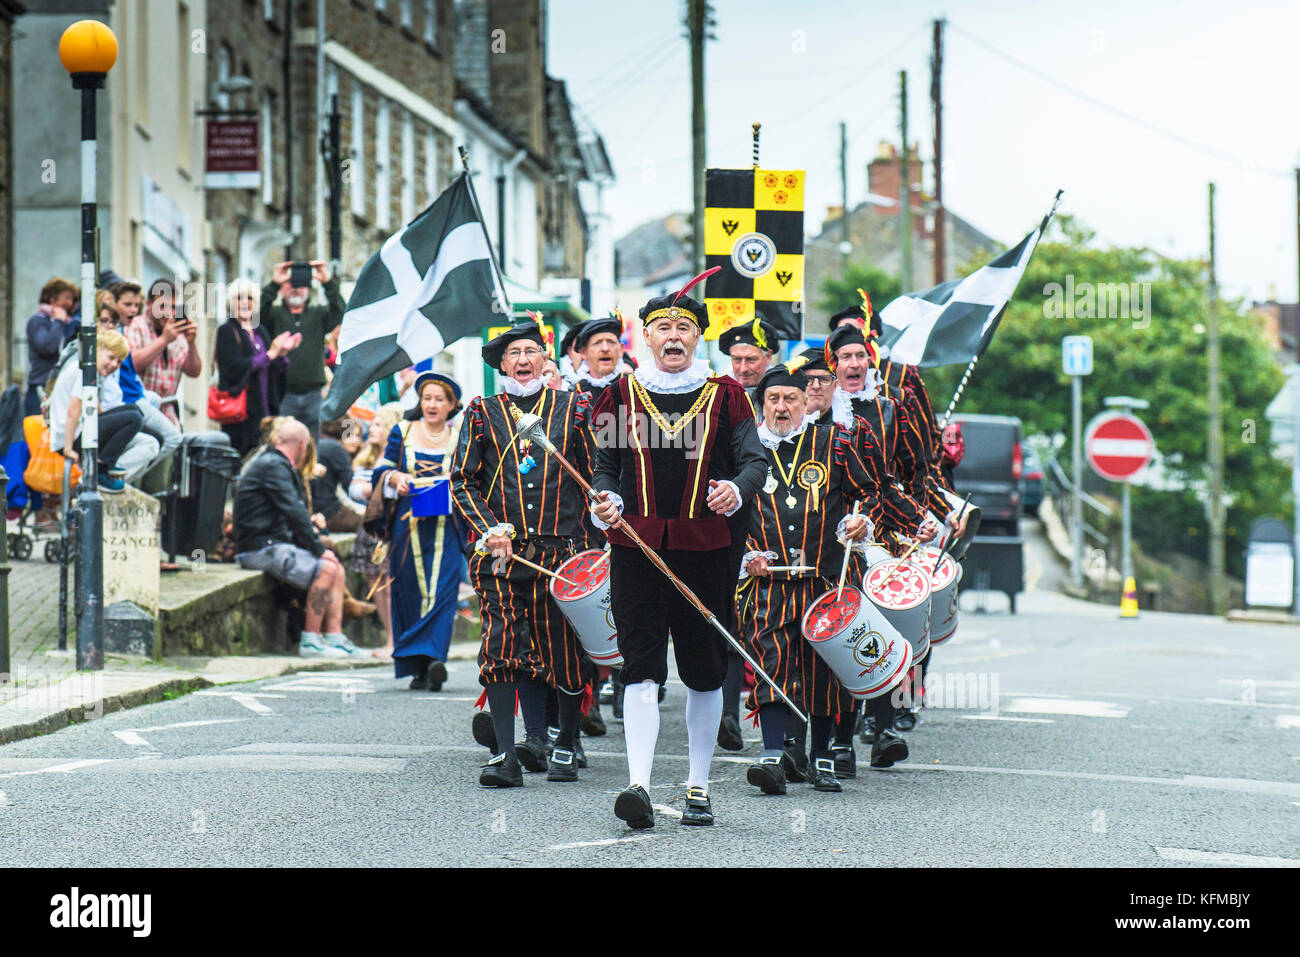 Penryn Kemeneth una herencia festival de dos días en el Penryn Cornwall - el Falmouth Marching Band, marchando por las calles de Penryn. Foto de stock